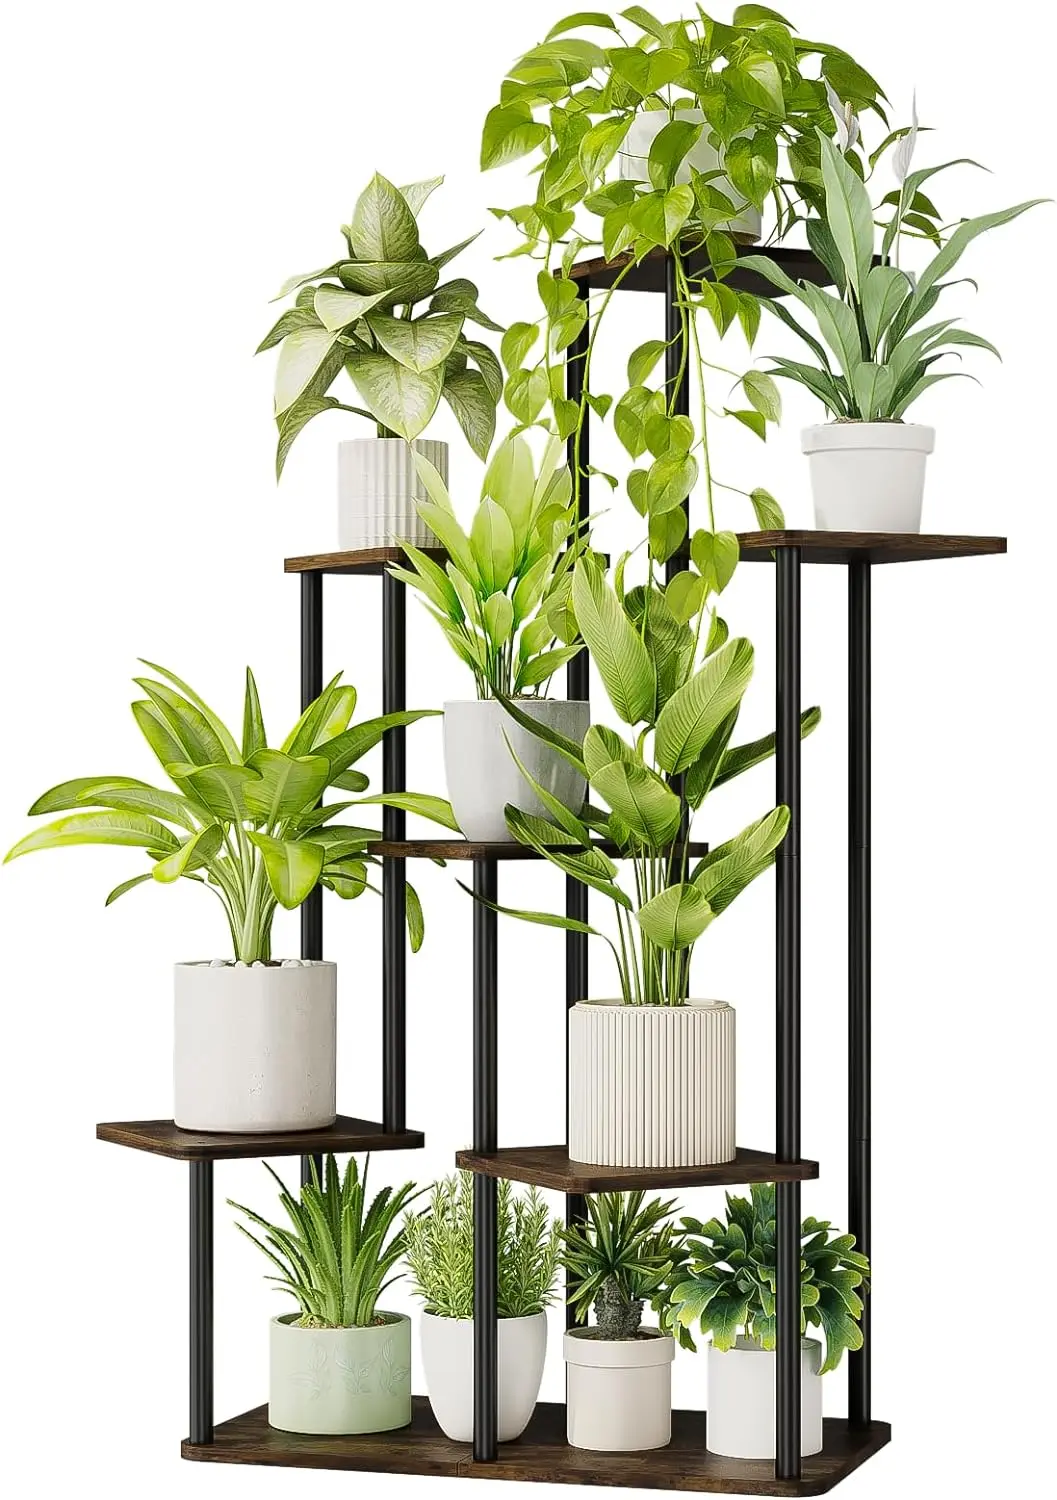 

Подставка для растений в помещении, высота 7 ярусов, металлическая полка для растений для нескольких растений, большая многоярусная подставка для цветов